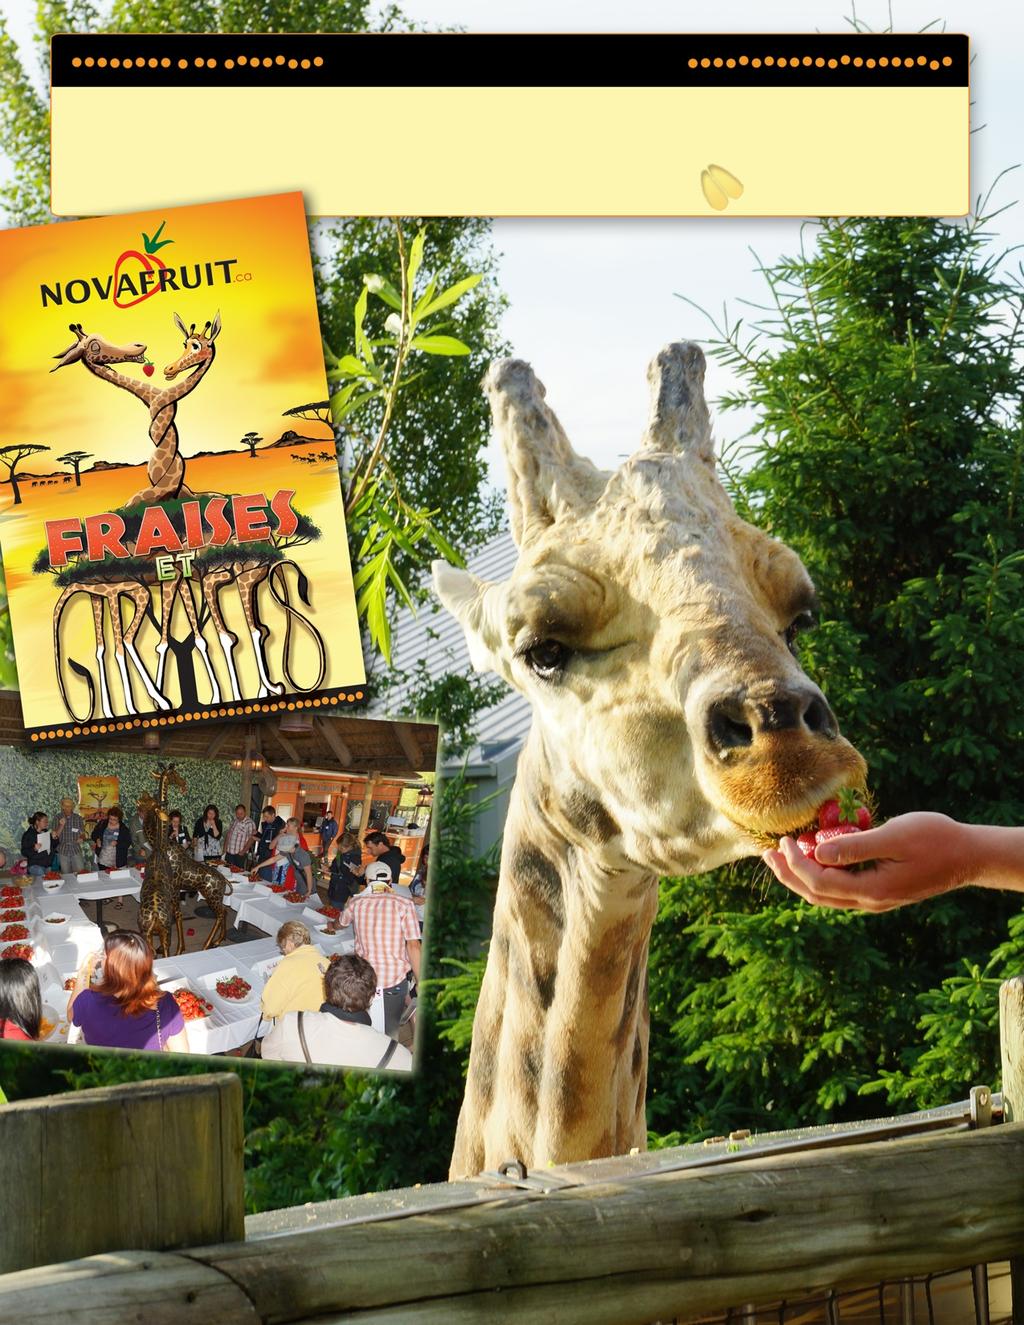 Fraises et girafes Le 8 juin 2012, à l occasion de son 10e anniversaire, NOVAFRUIT a organisé une dégustation de nouvelles variétés de fraises sur la terrasse africaine du Zoo de Granby en compagnie